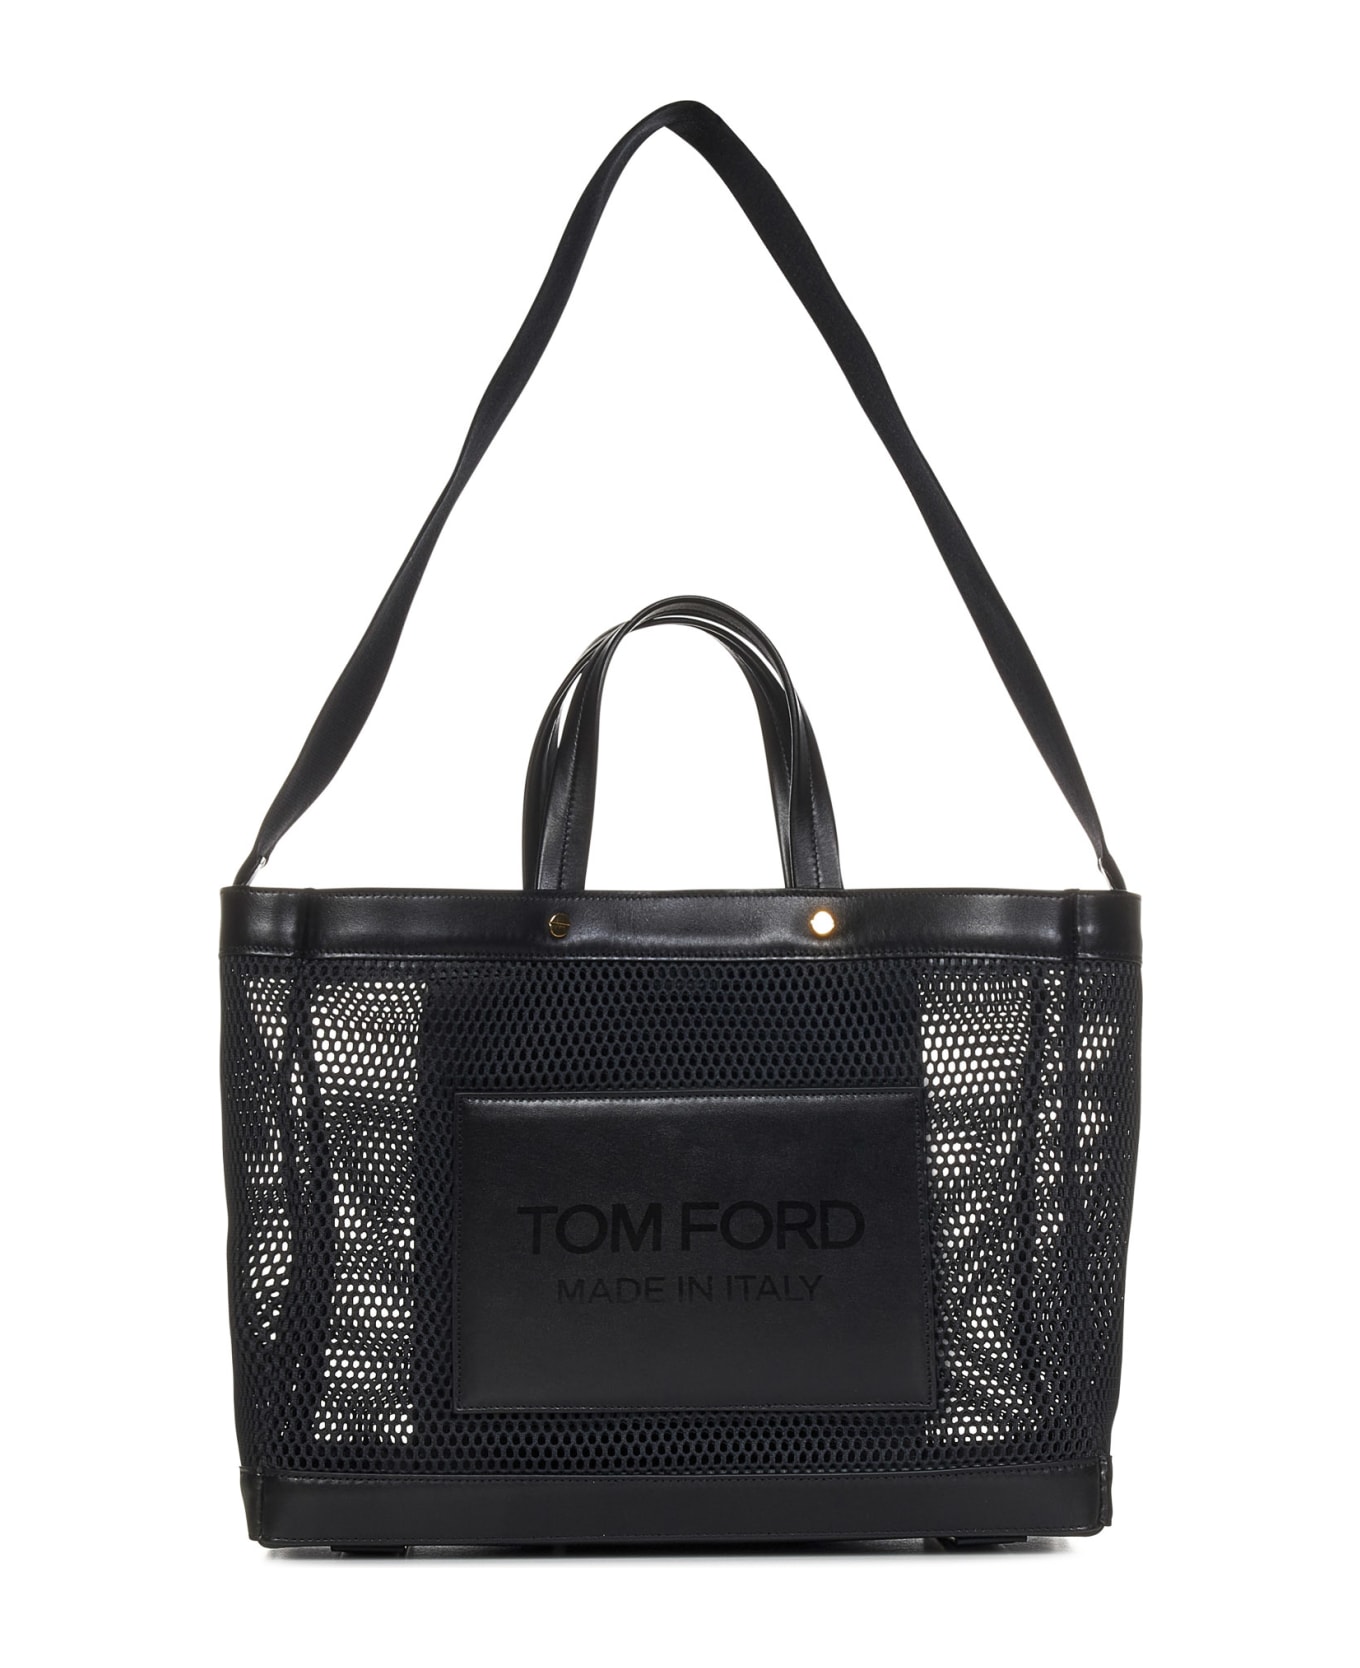 Tom Ford E/w Small Tote - Black